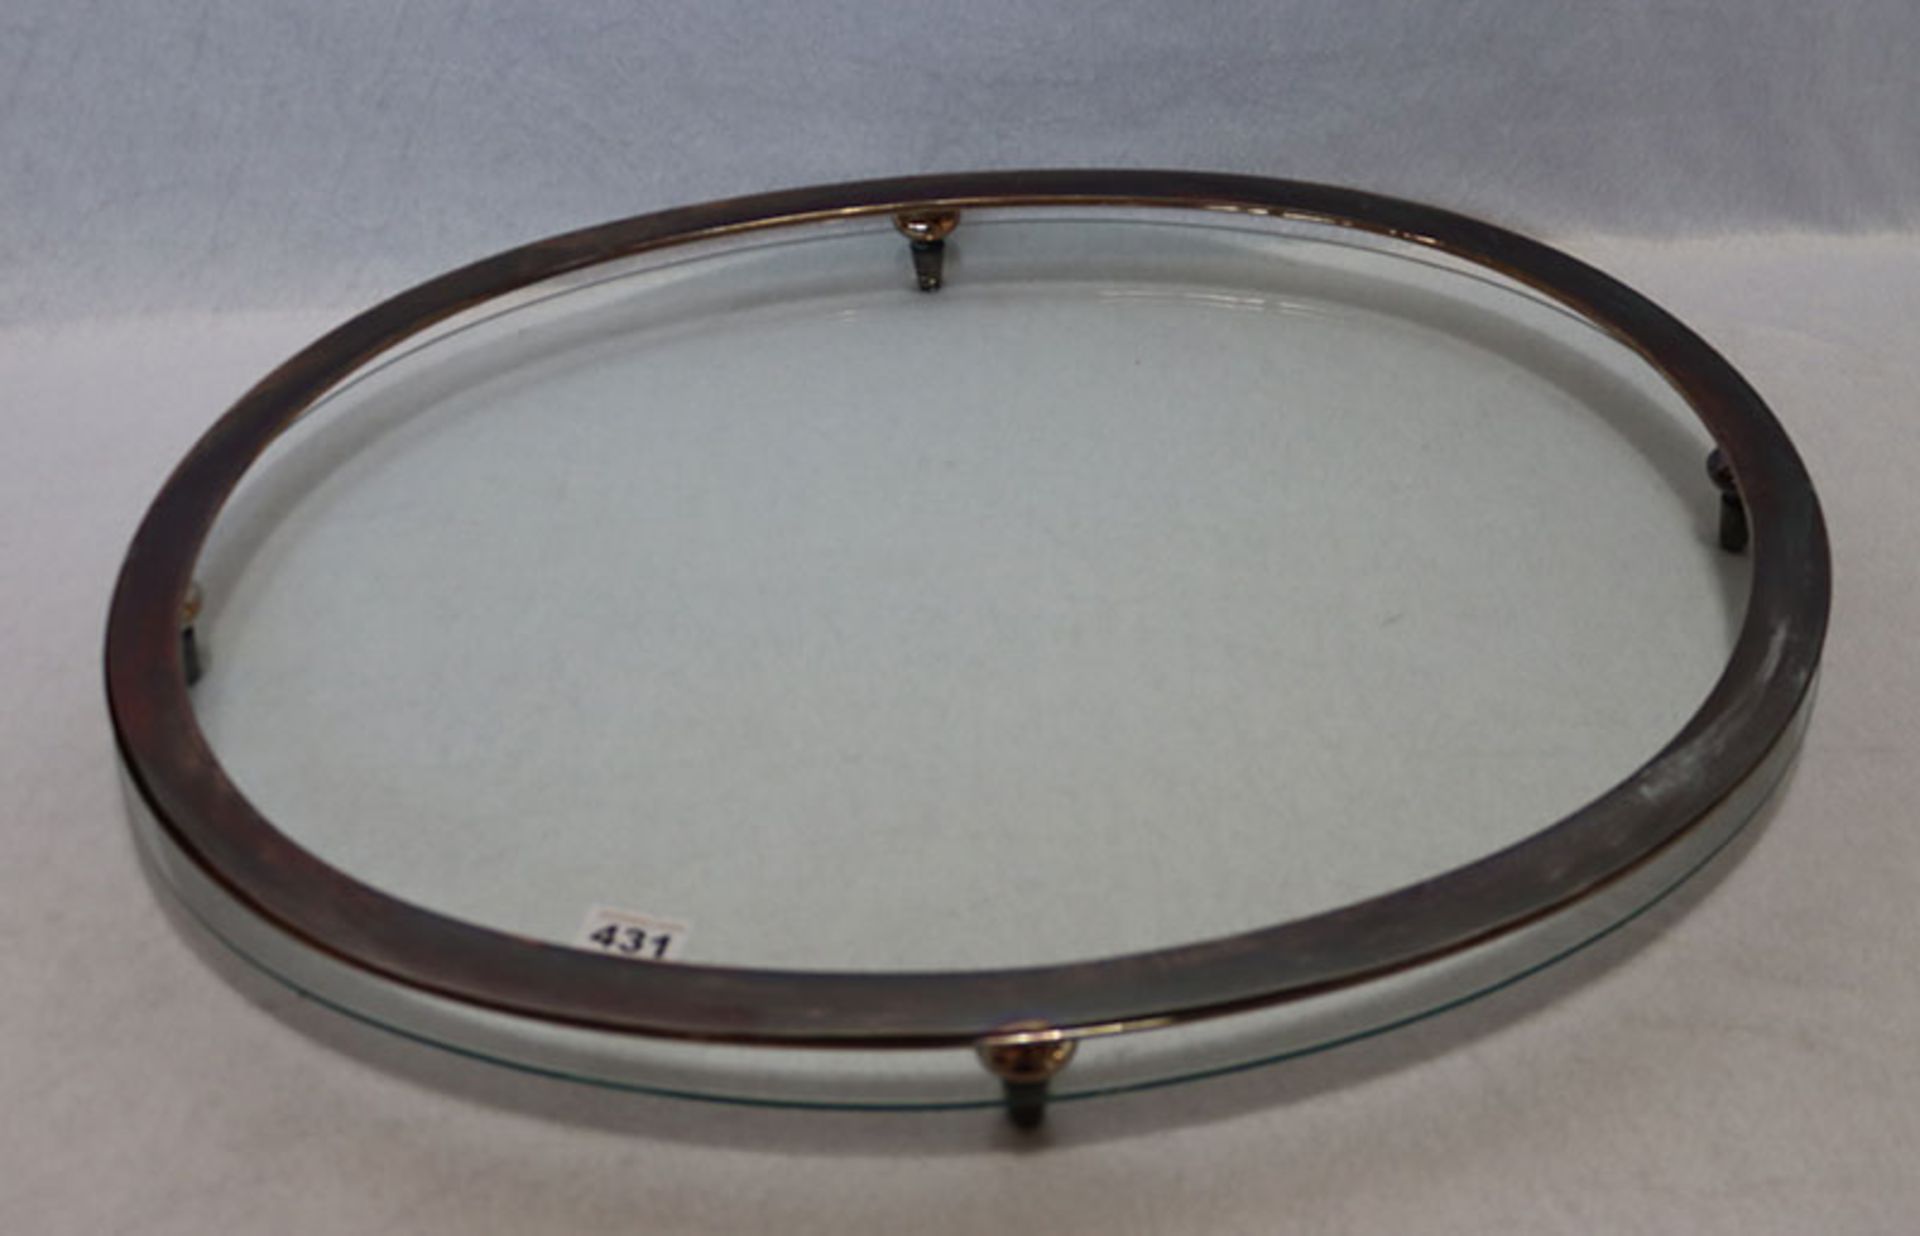 Ovales Metall/Glas Tischaufsatz H 6,5 cm, B 67 cm, T 54 cm, Gebrauchsspuren